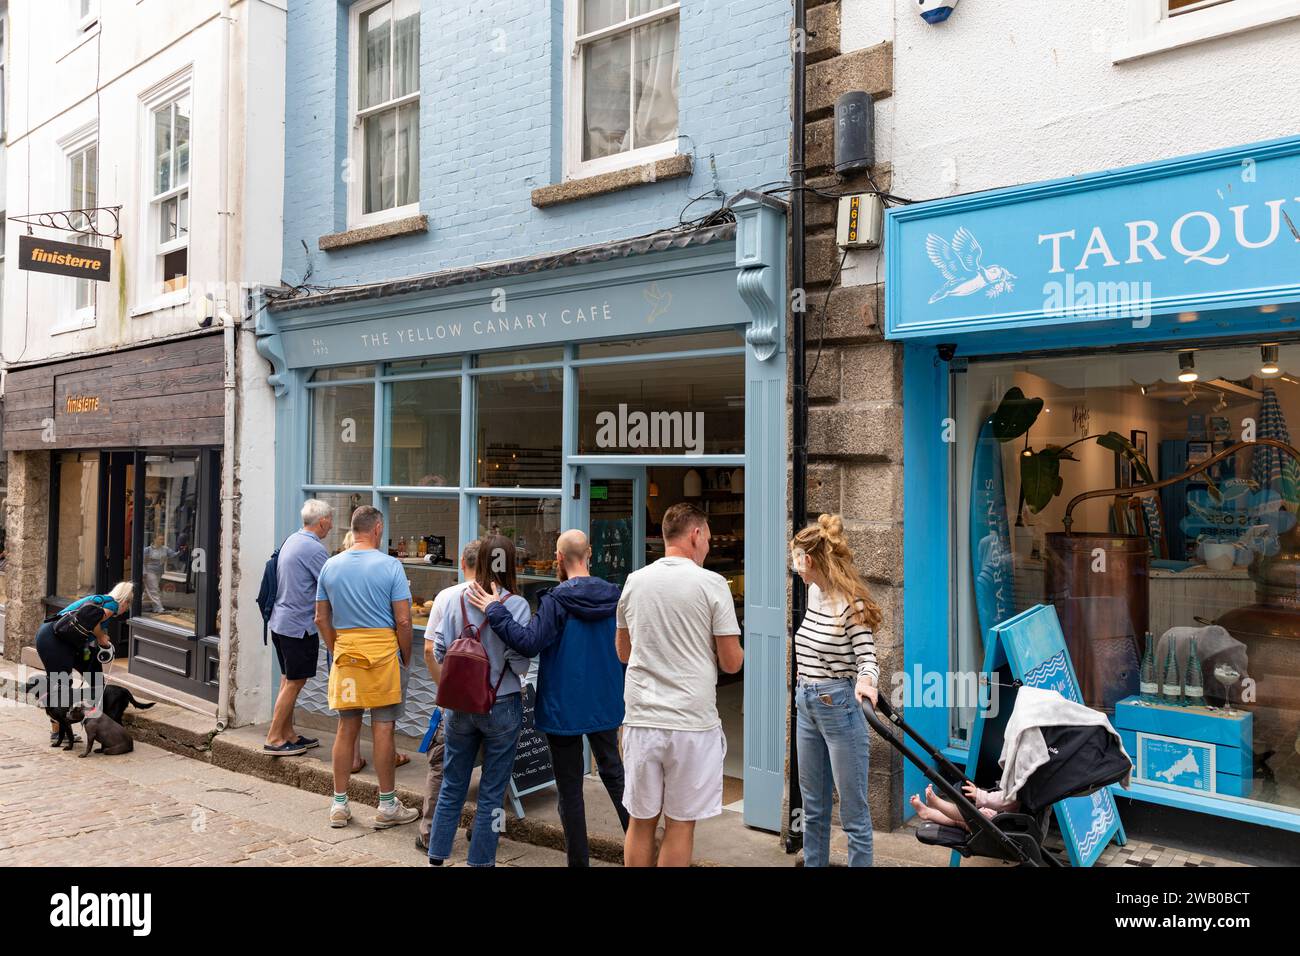 St Ives Cornwall England, Fore Street dans le centre-ville et les clients font la queue devant le café Yellow canary Cafe, Royaume-Uni, 2023 Banque D'Images